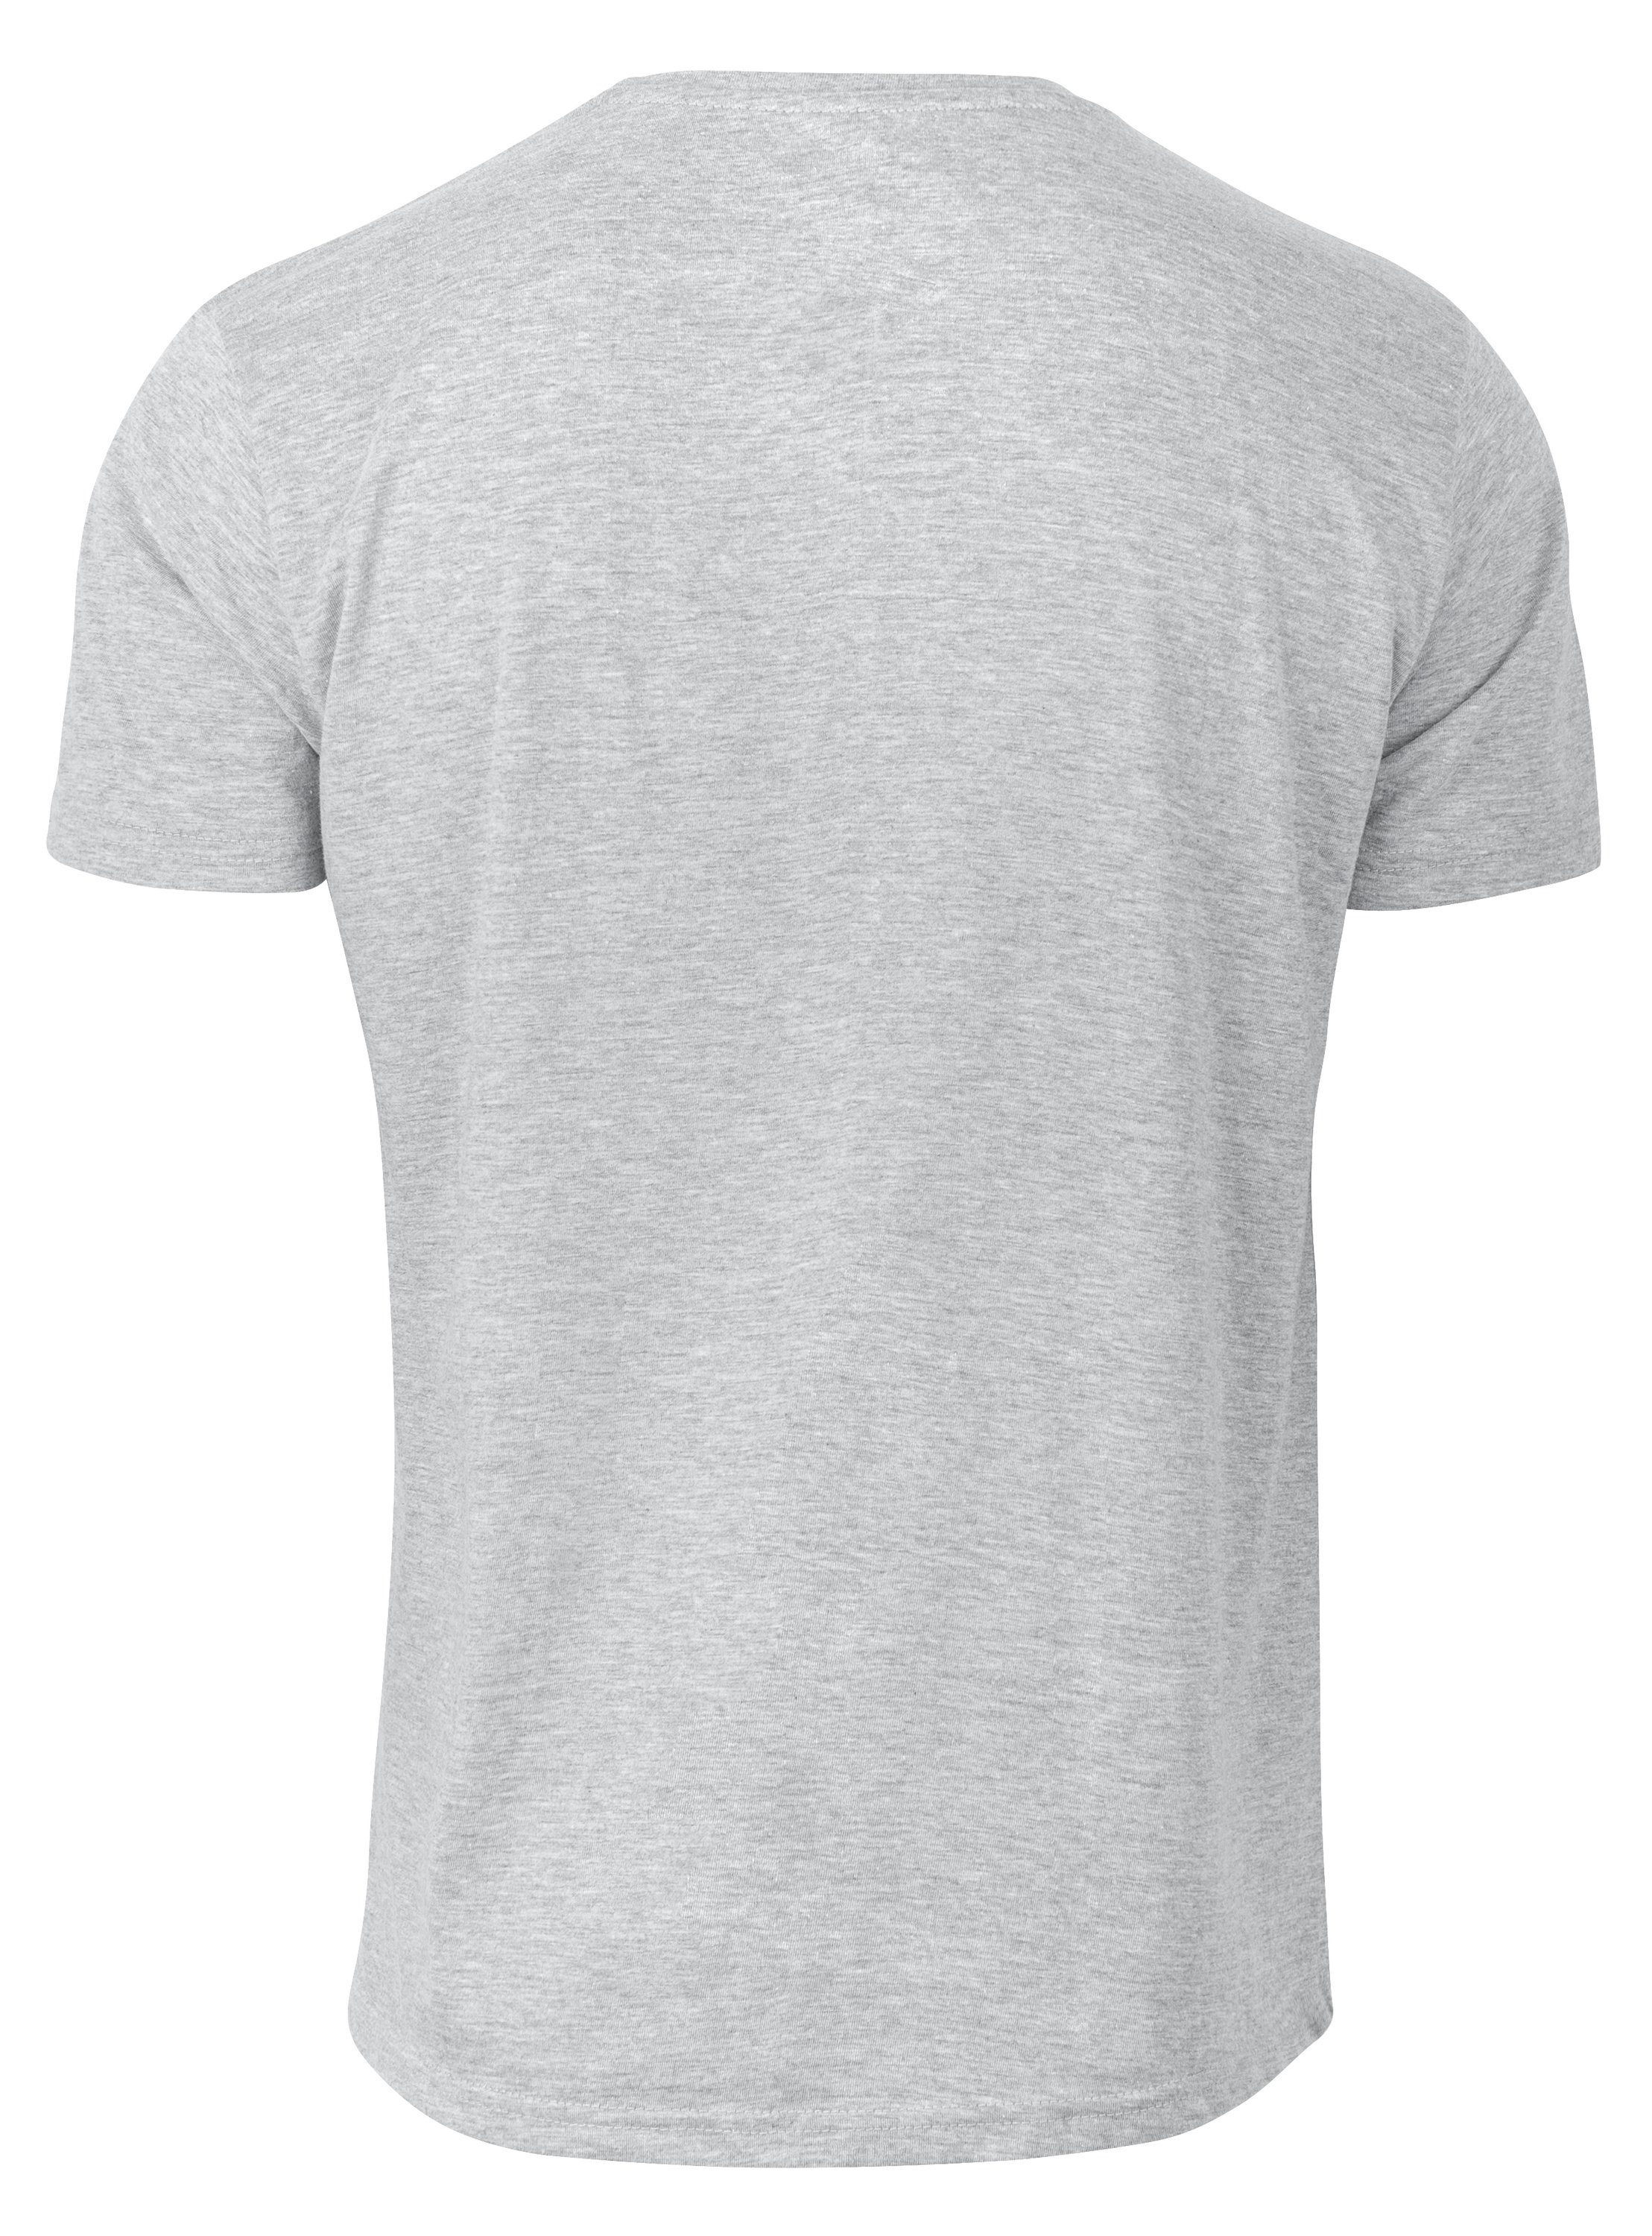 den Cotton - Zeit Grau Garten Prime® Endlich für T-Shirt Rente